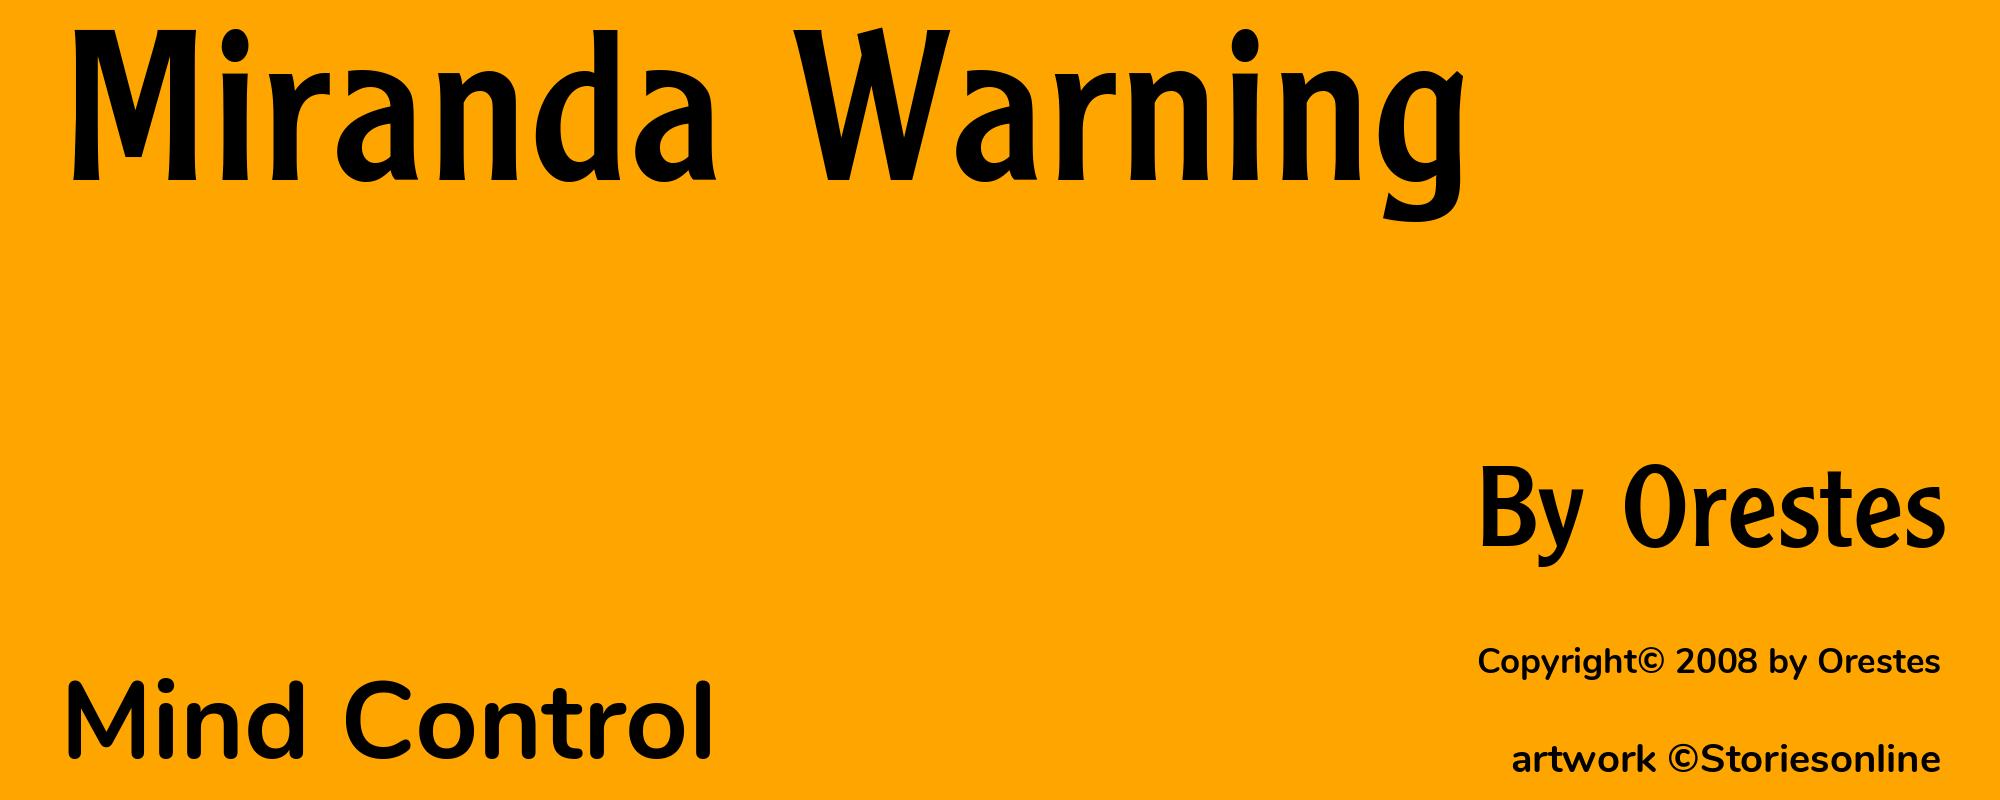 Miranda Warning - Cover